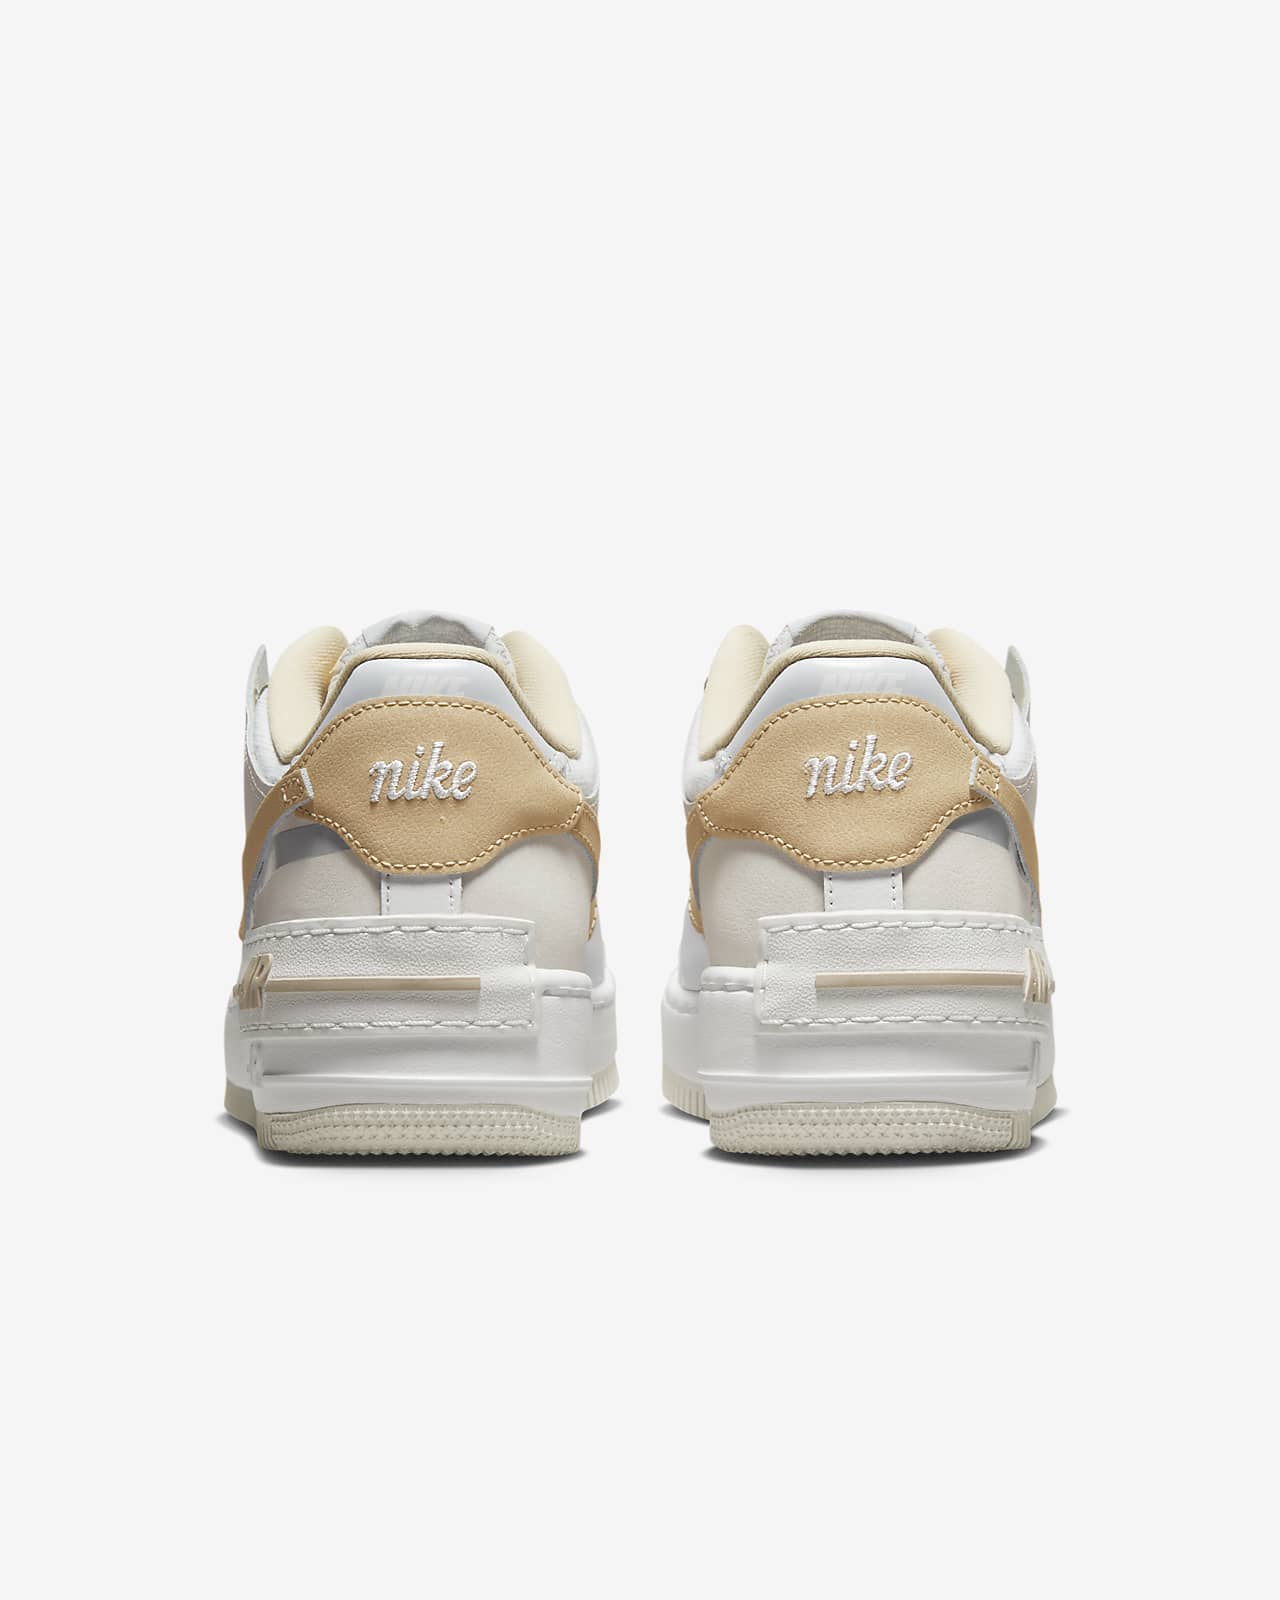 Air Force 1 Shadow, las zapatillas de Nike para bailes urbanos